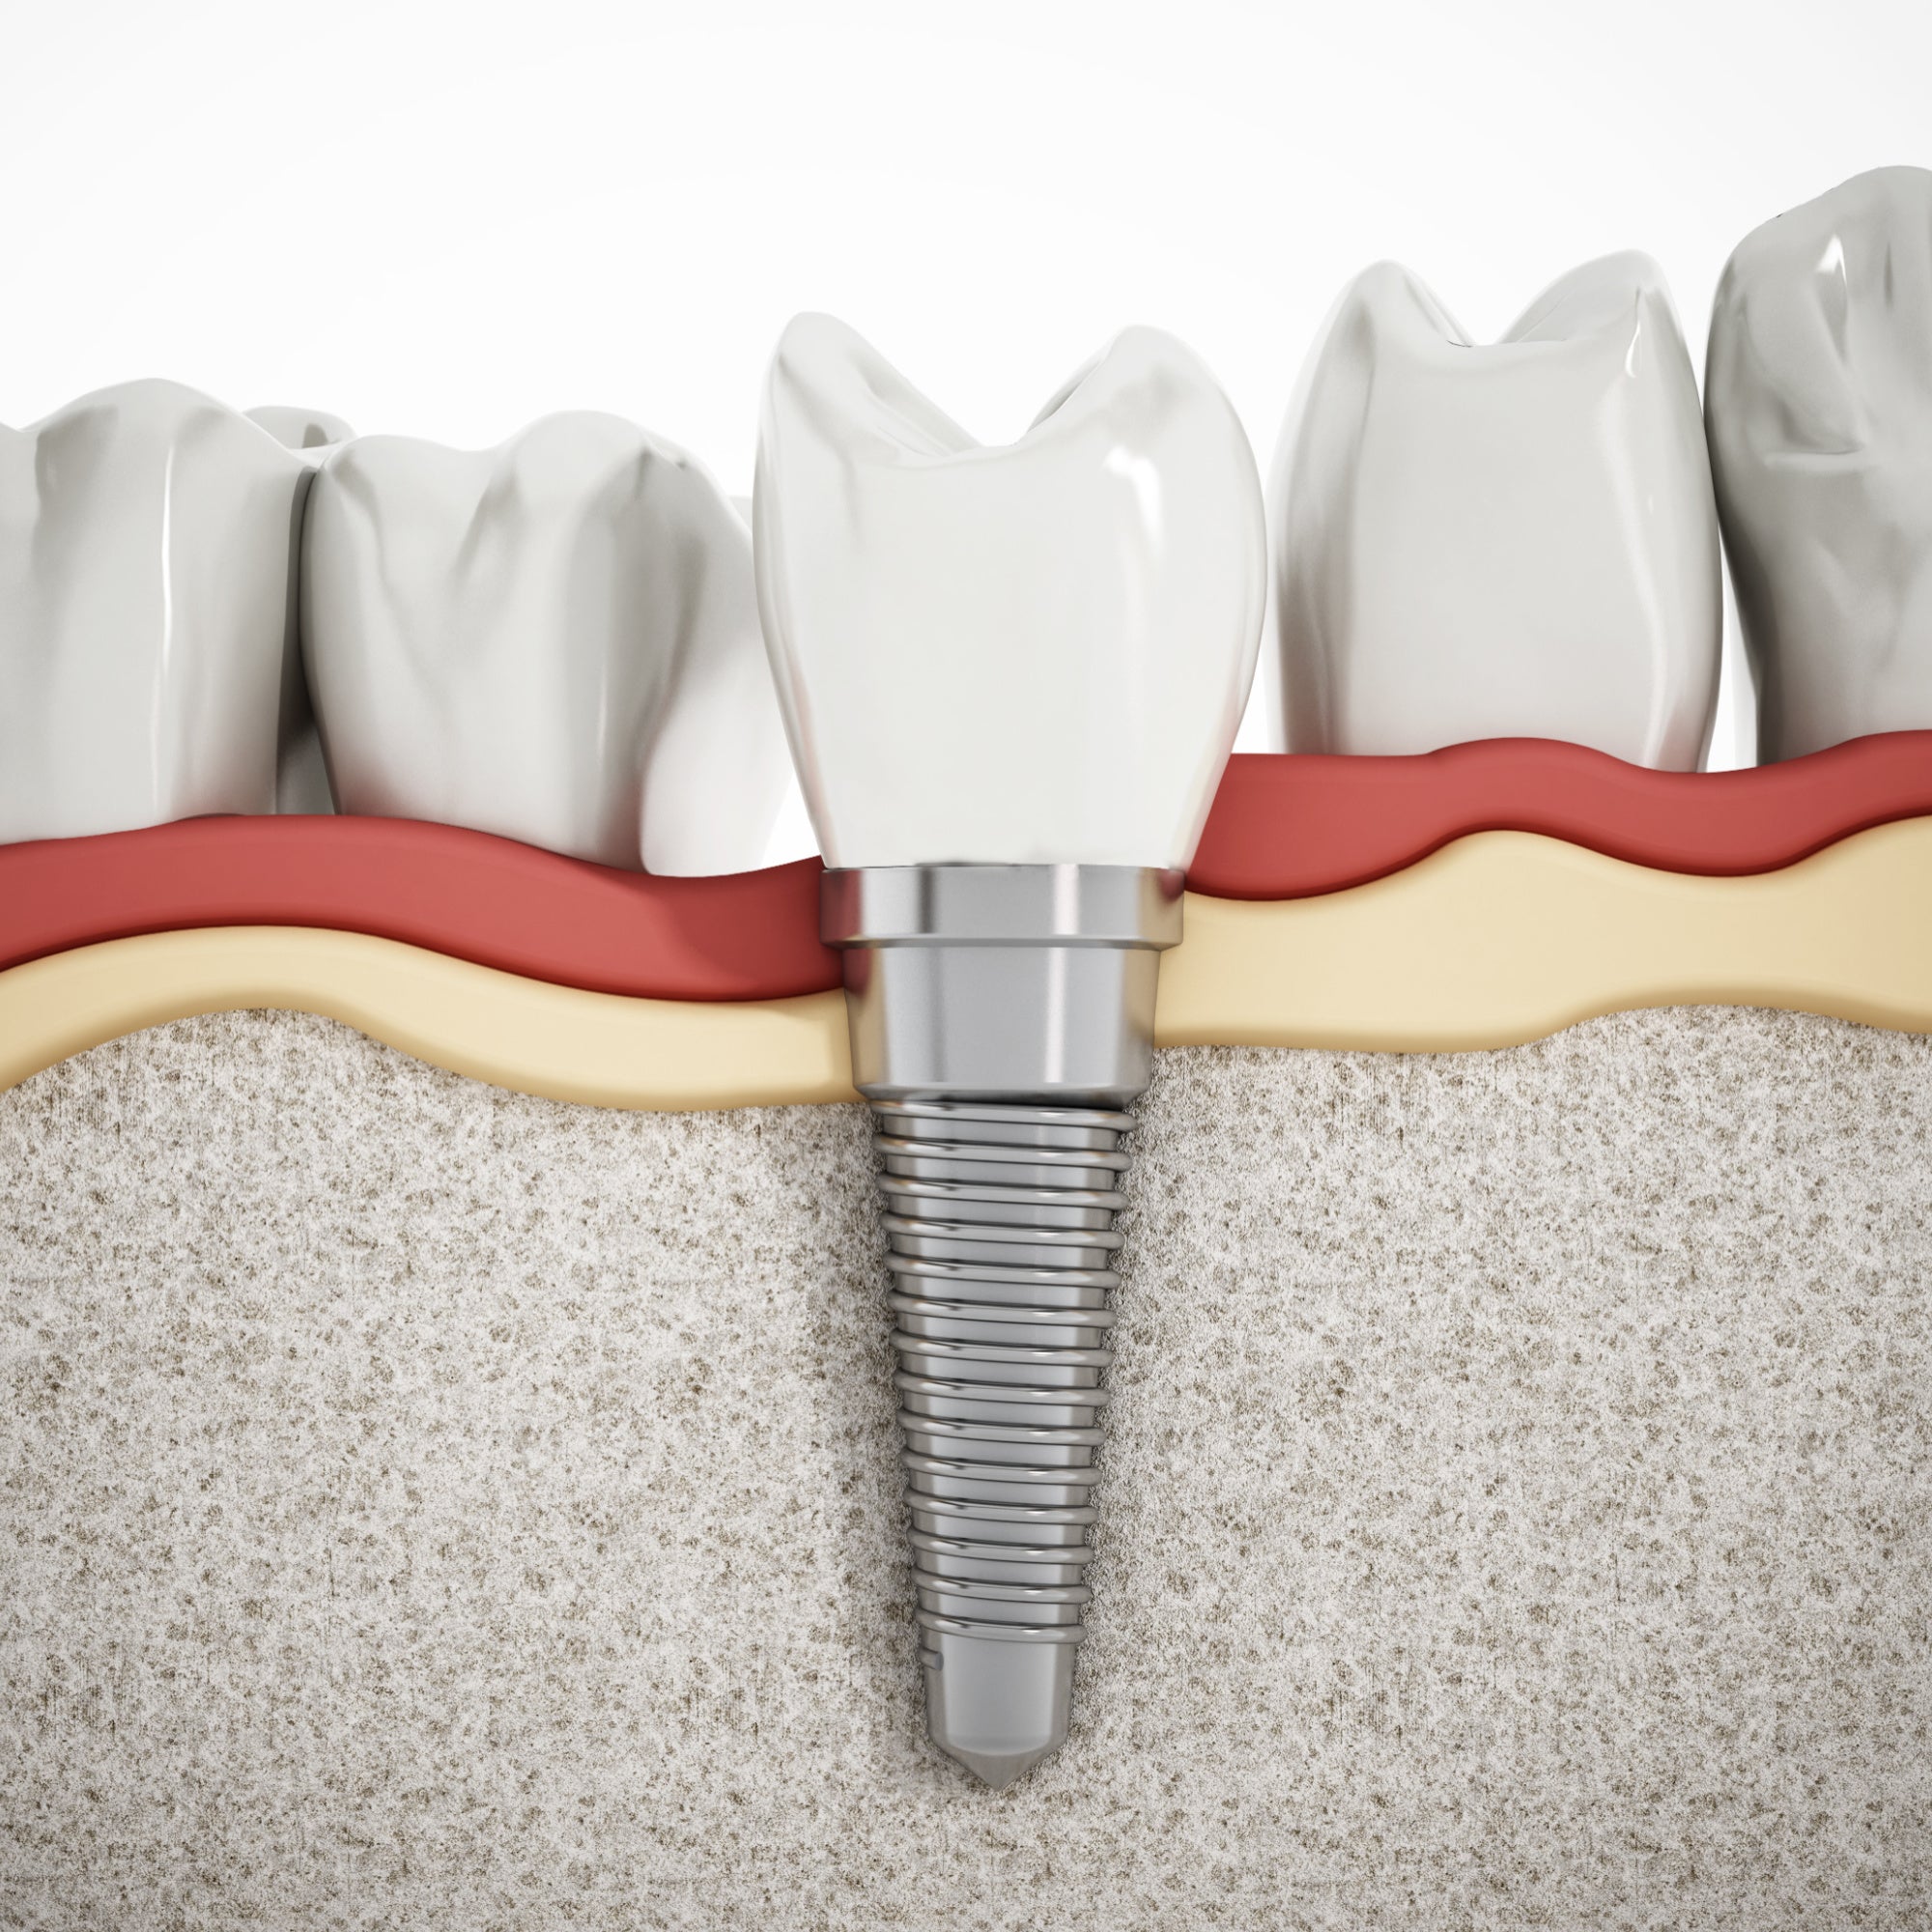 dental implant post, denture, tooth replacement abutement ceramic crown endosteal titanium zirconia